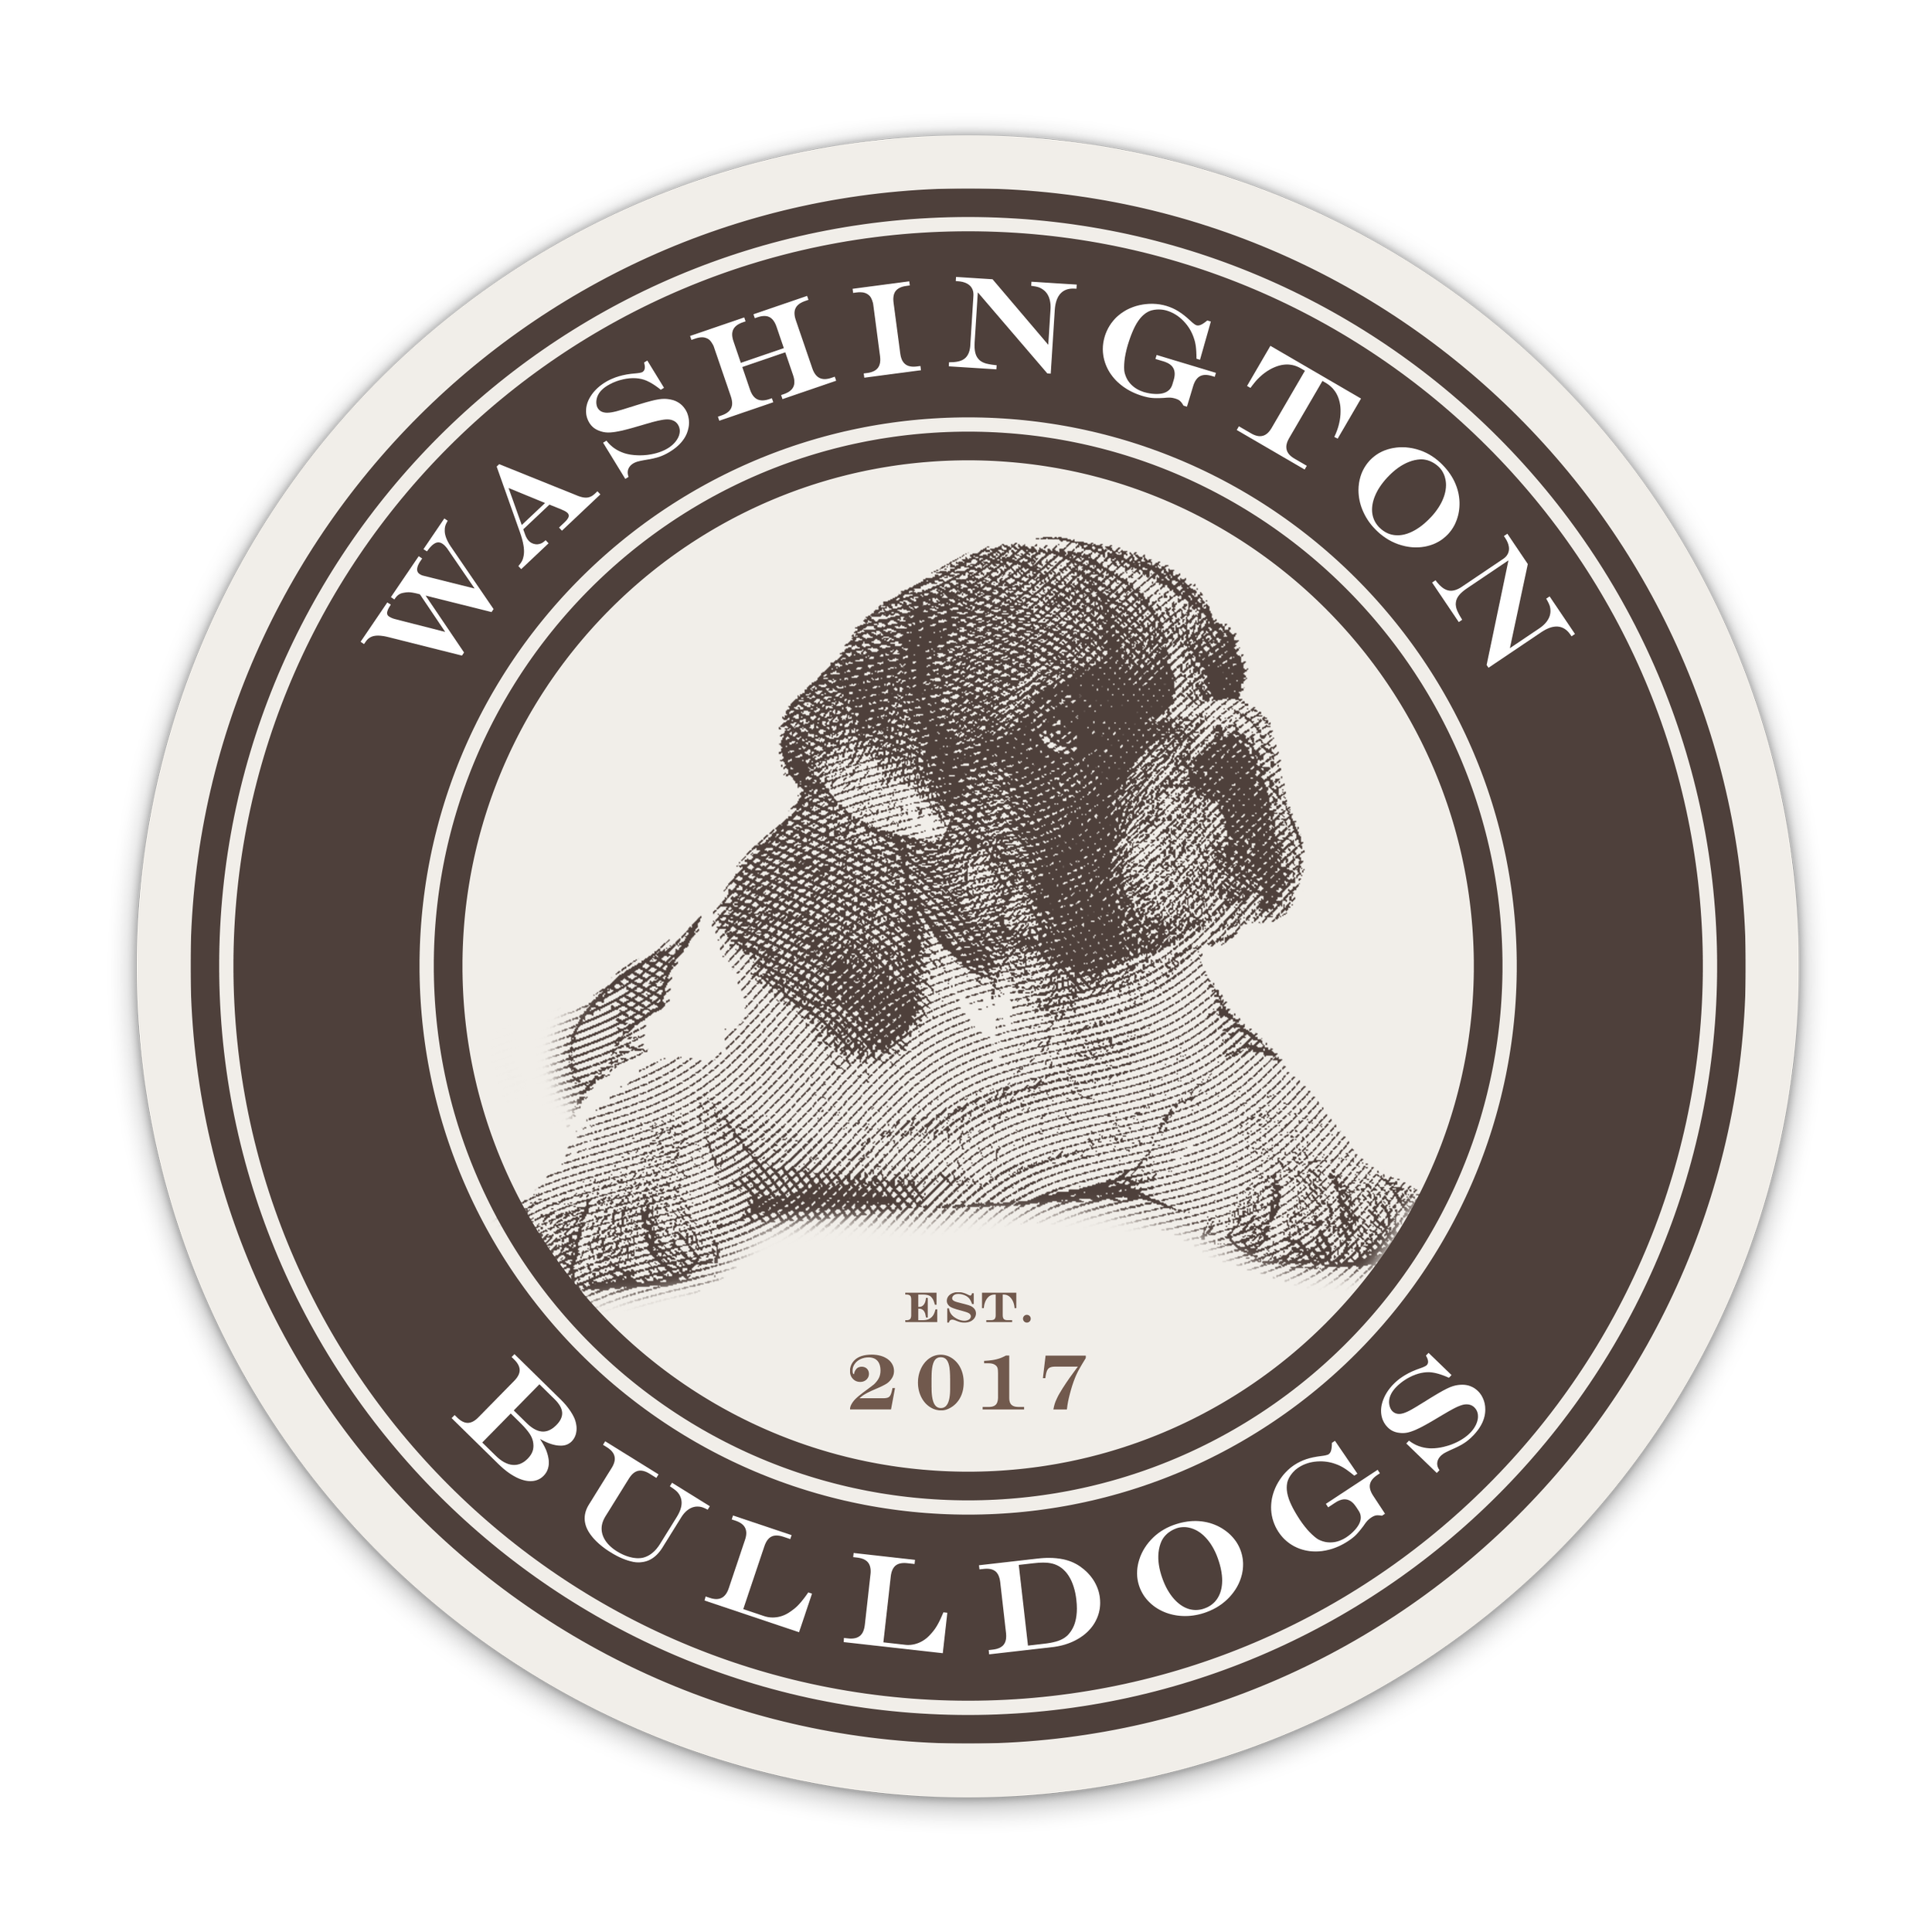 Washington Bulldogs LLC